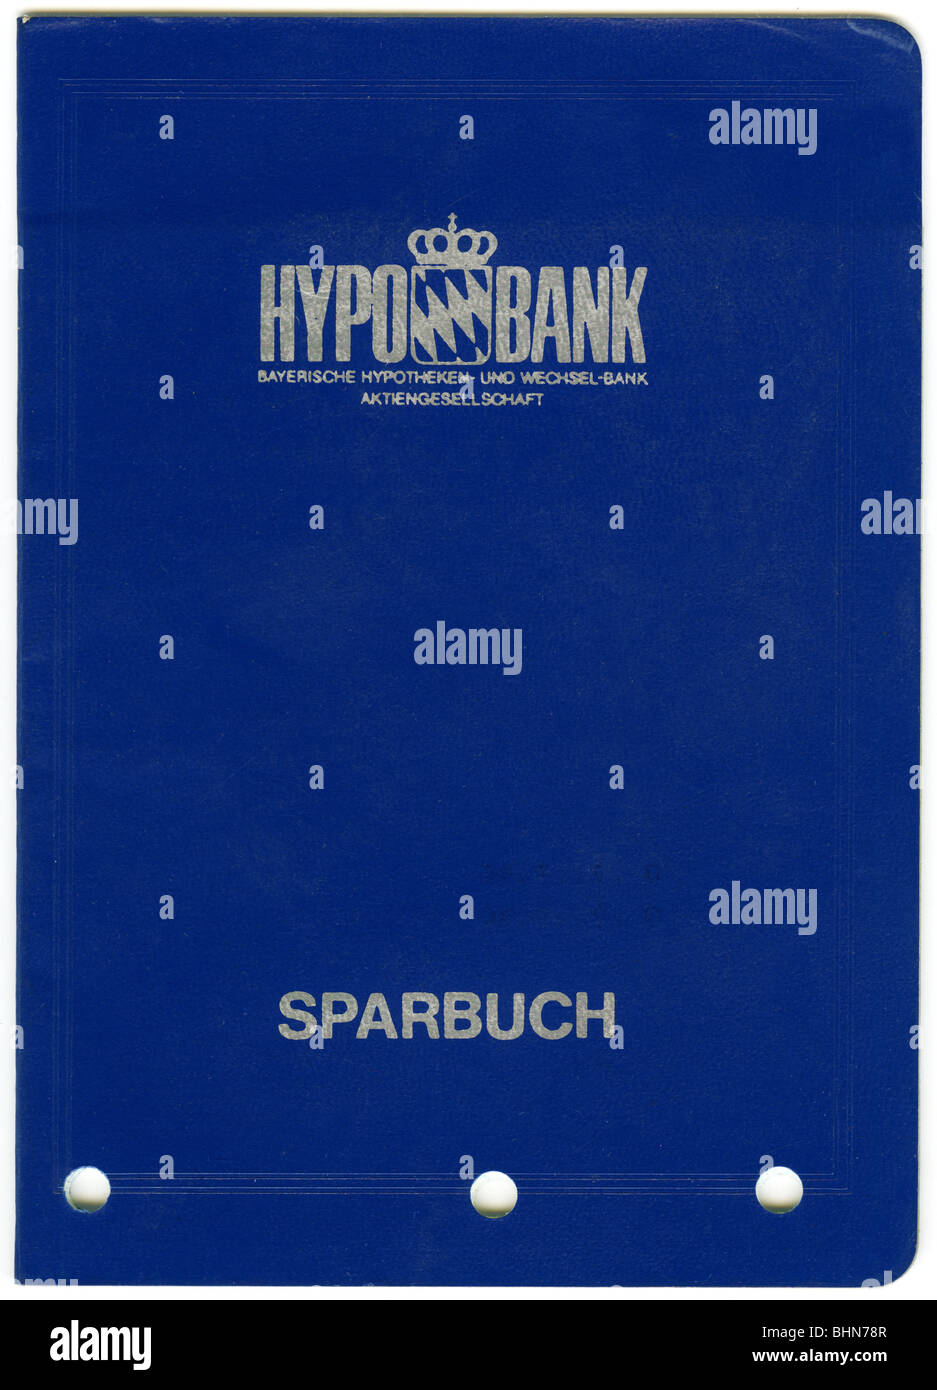 Geld/Finanzen, Banken, Bayerische Hypotheken- und Wechselbank (Hypo Bank), Sparbuch, 1986, Stockfoto